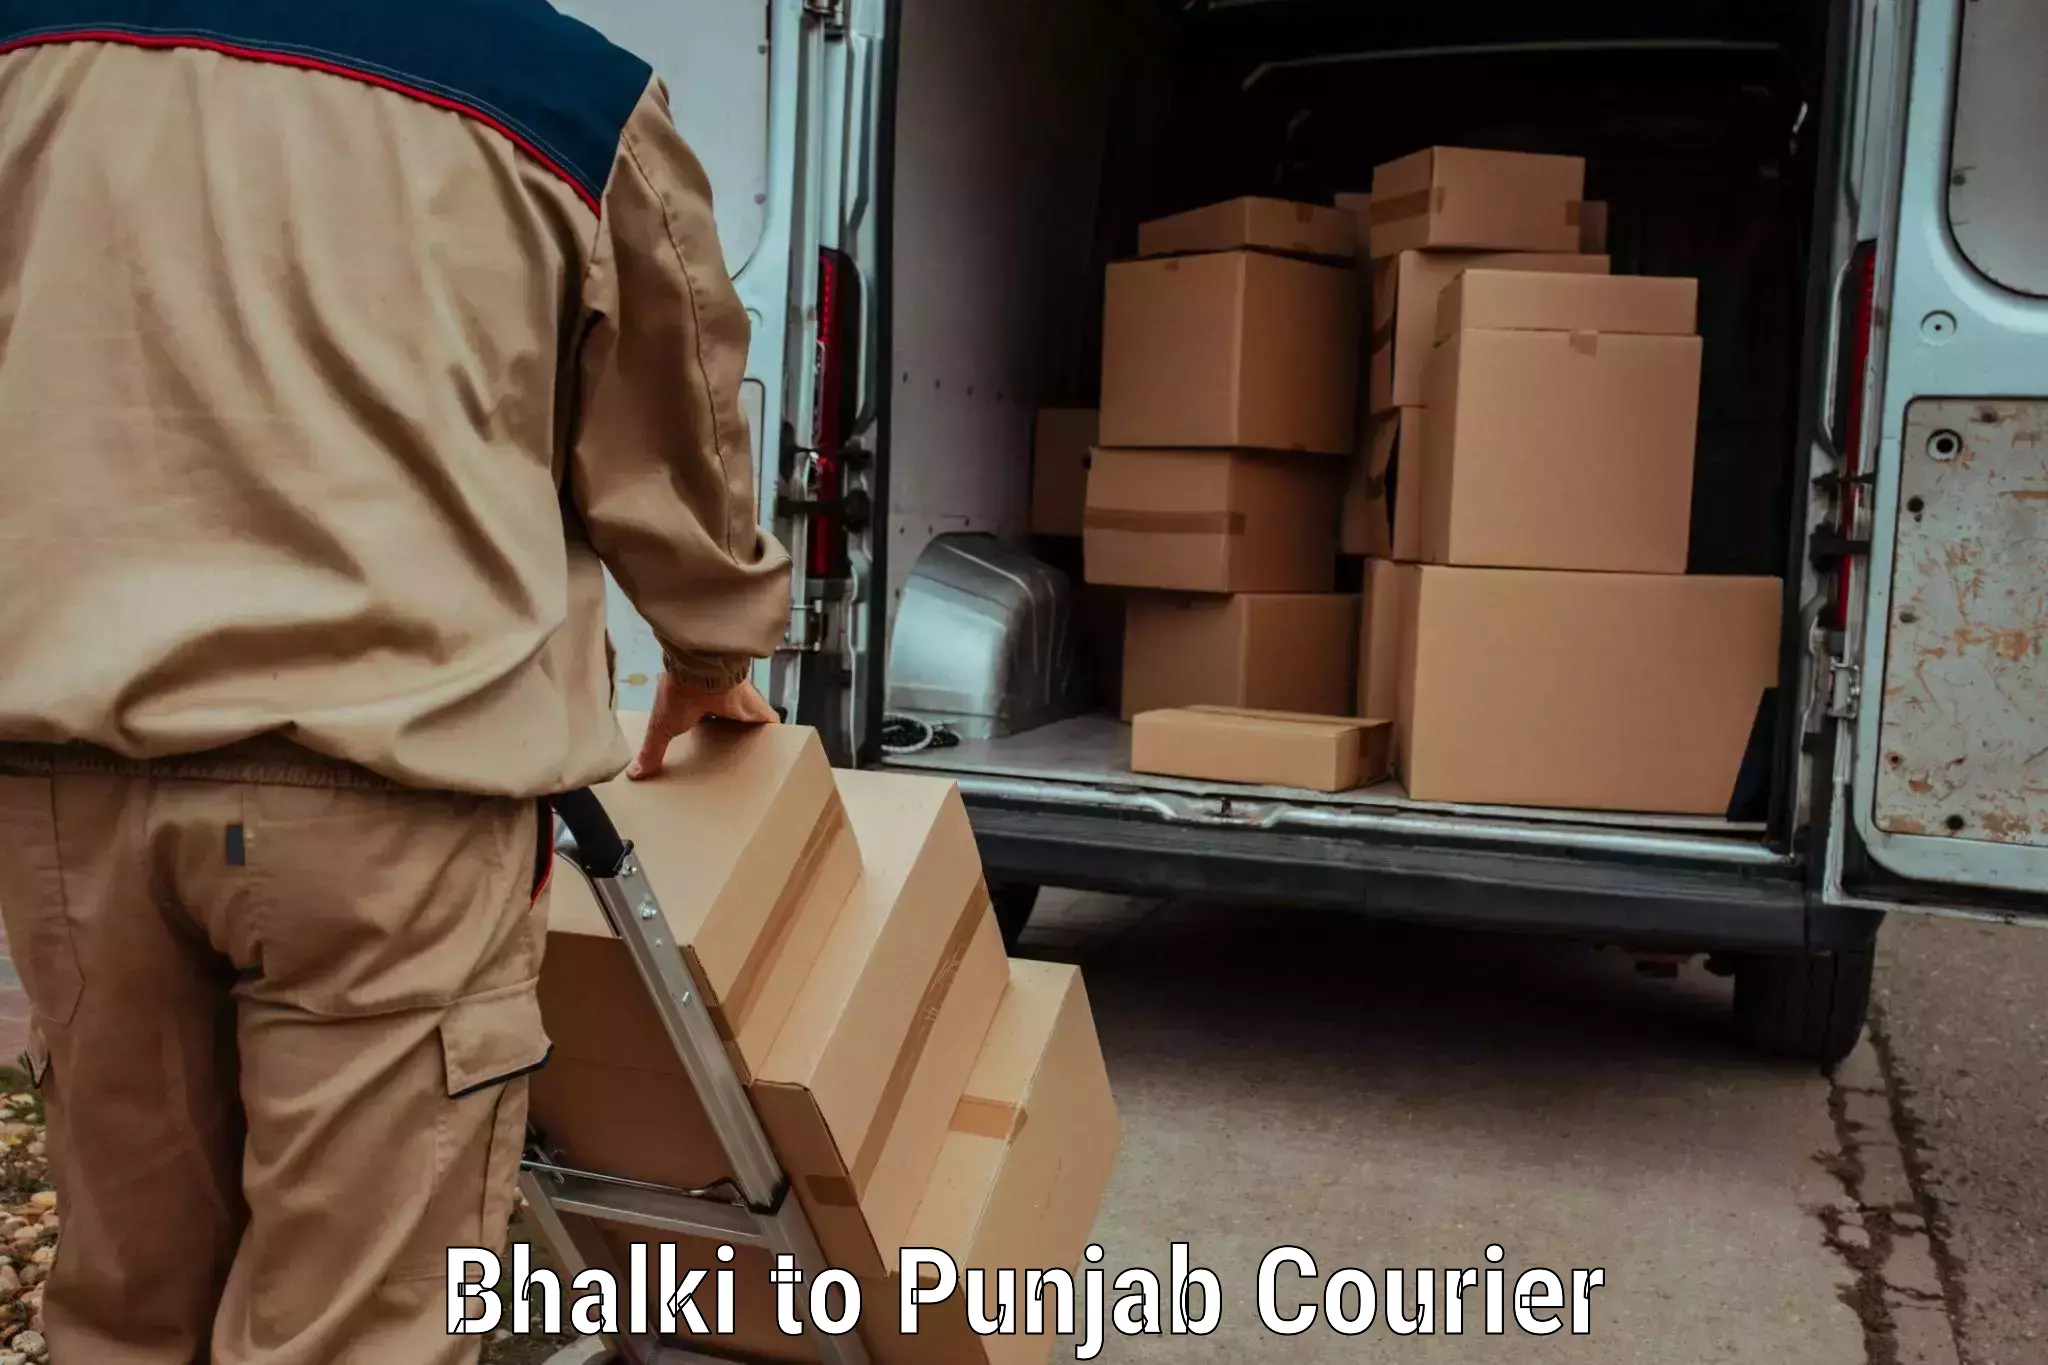 Baggage transport estimate Bhalki to Punjab